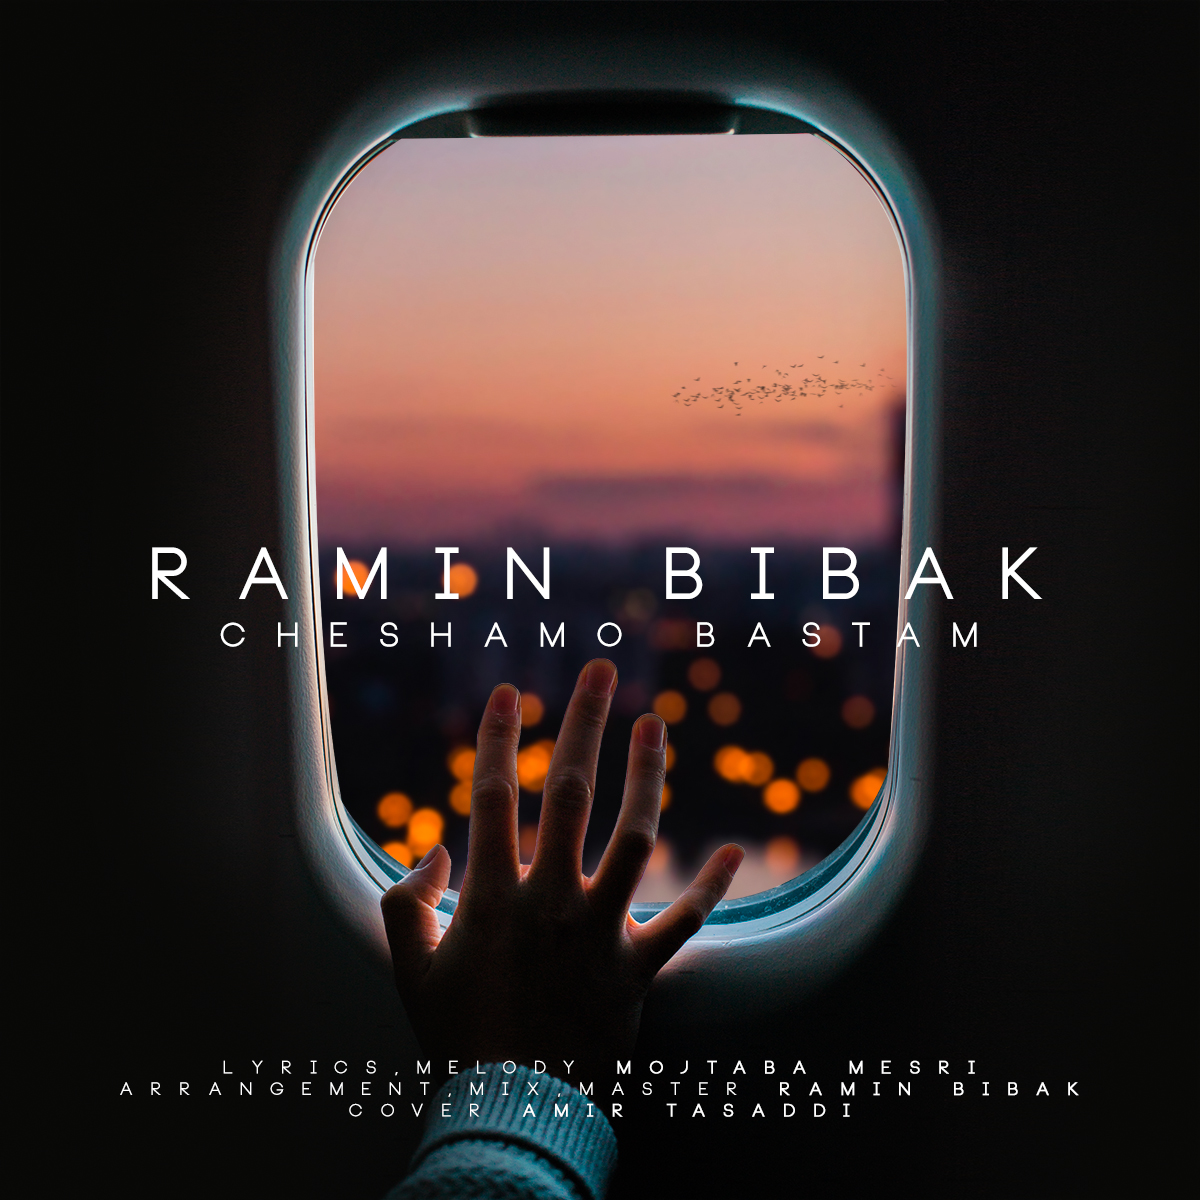  دانلود آهنگ جدید رامین بی باک - چشامو بستم | Download New Music By Ramin Bibak - Cheshamo Bastam